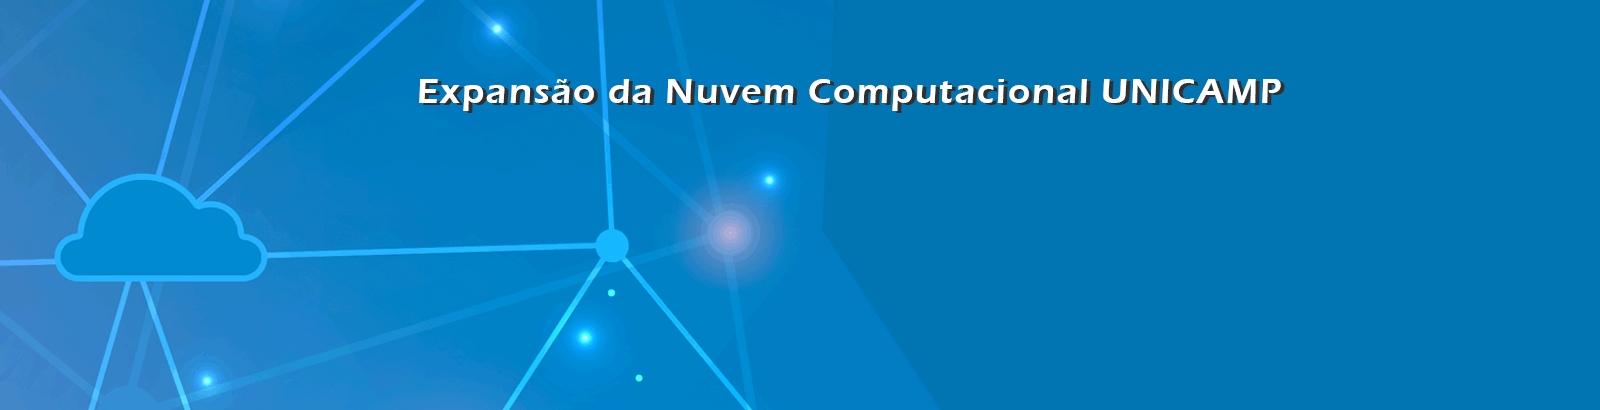 Banner Nuvem Unicamp